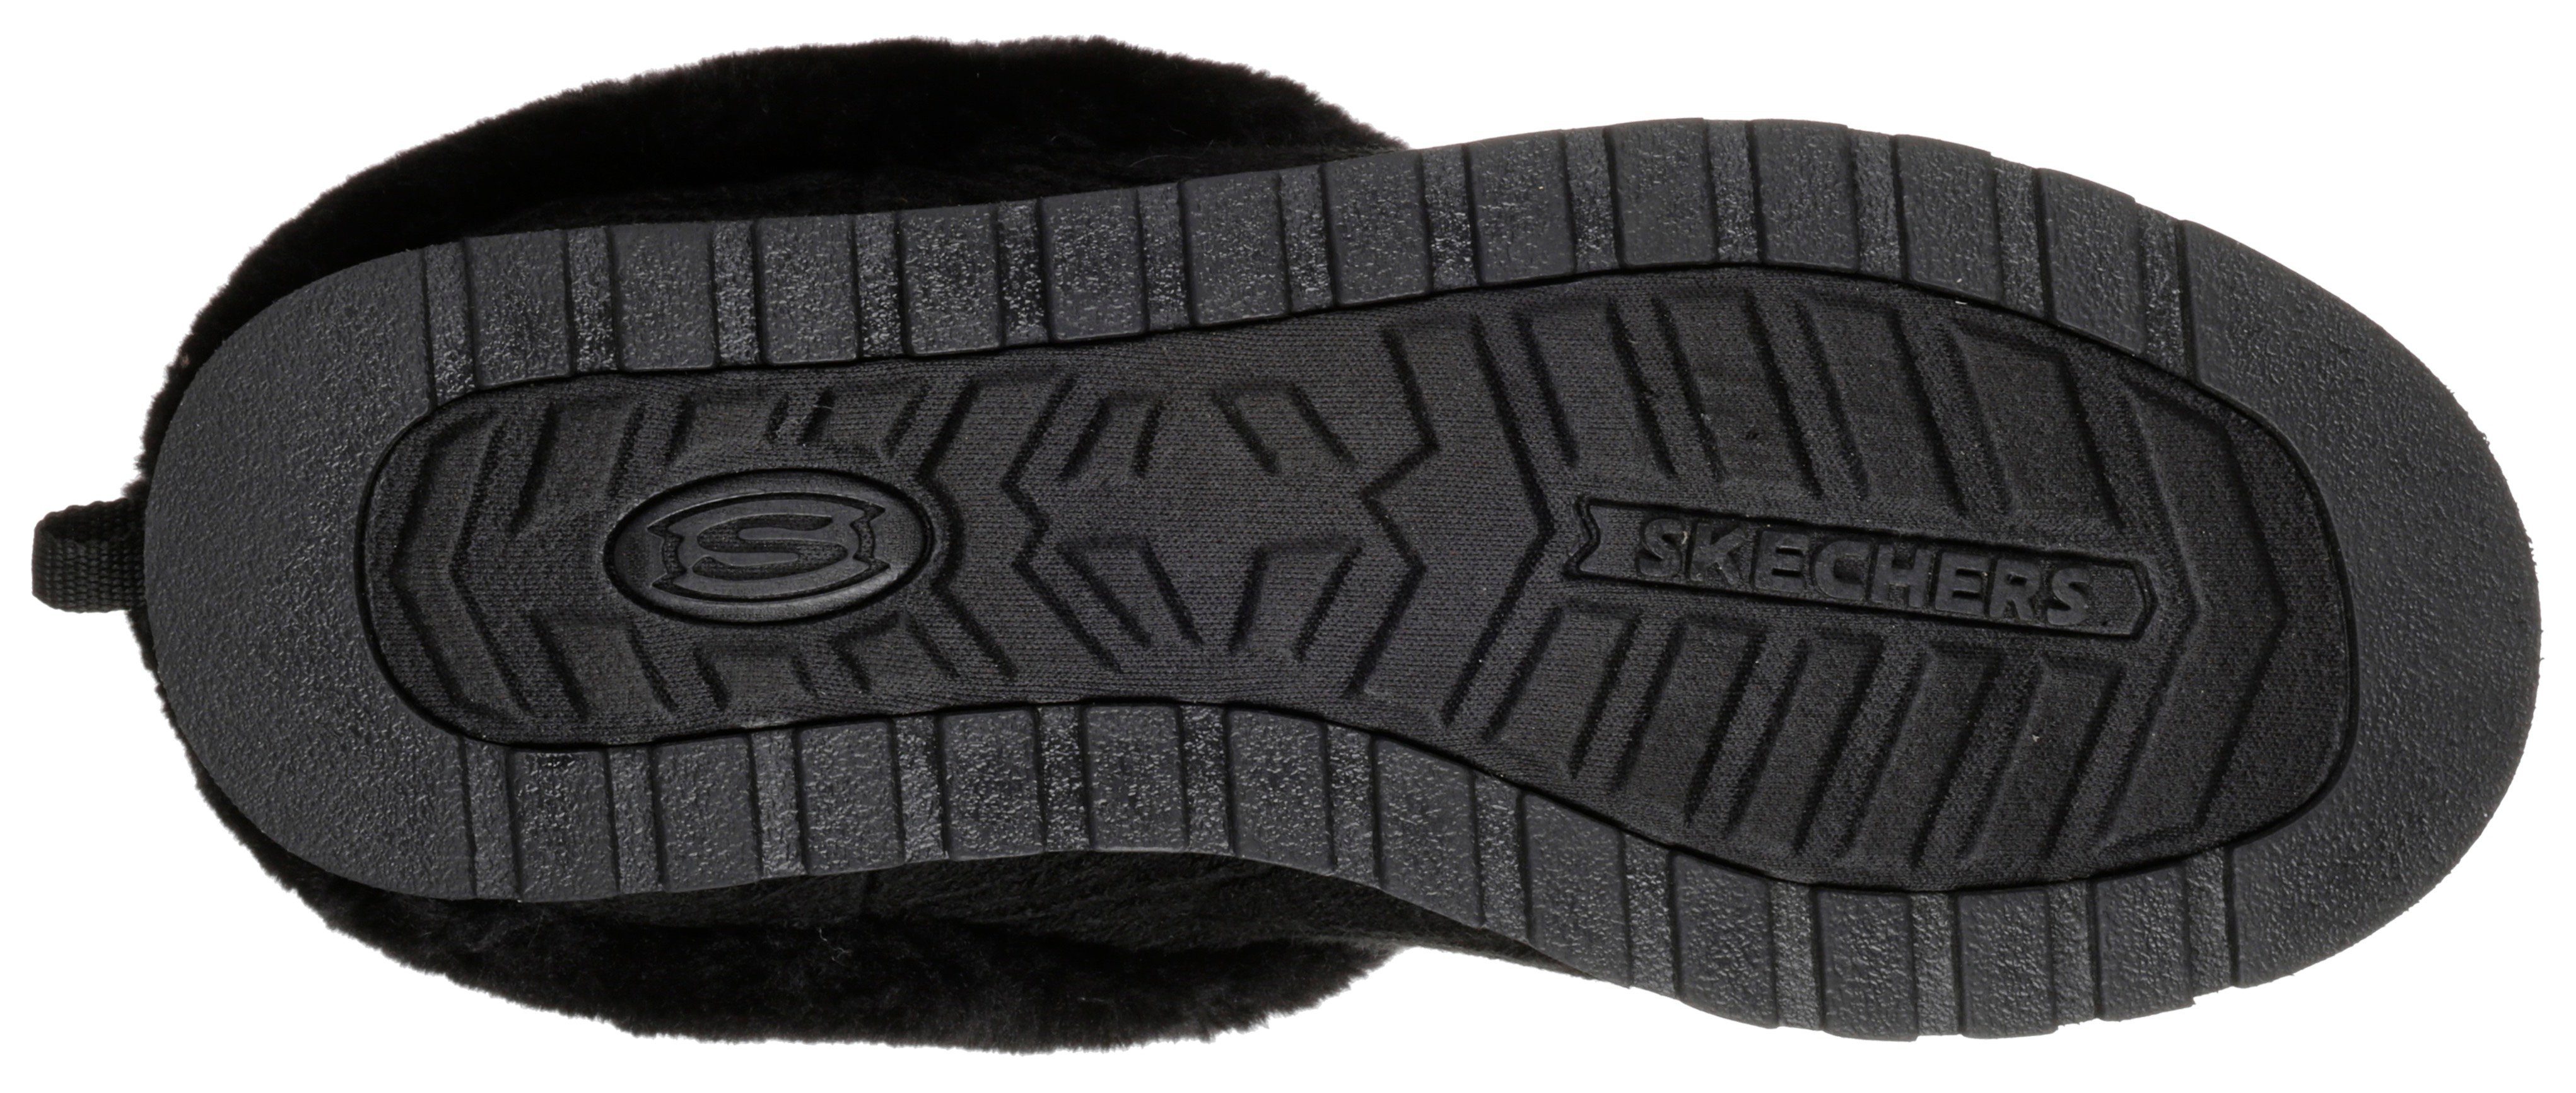 Skechers KEEPSAKES - ICE Strick-Optik schwarz in Pantoffel ANGEL